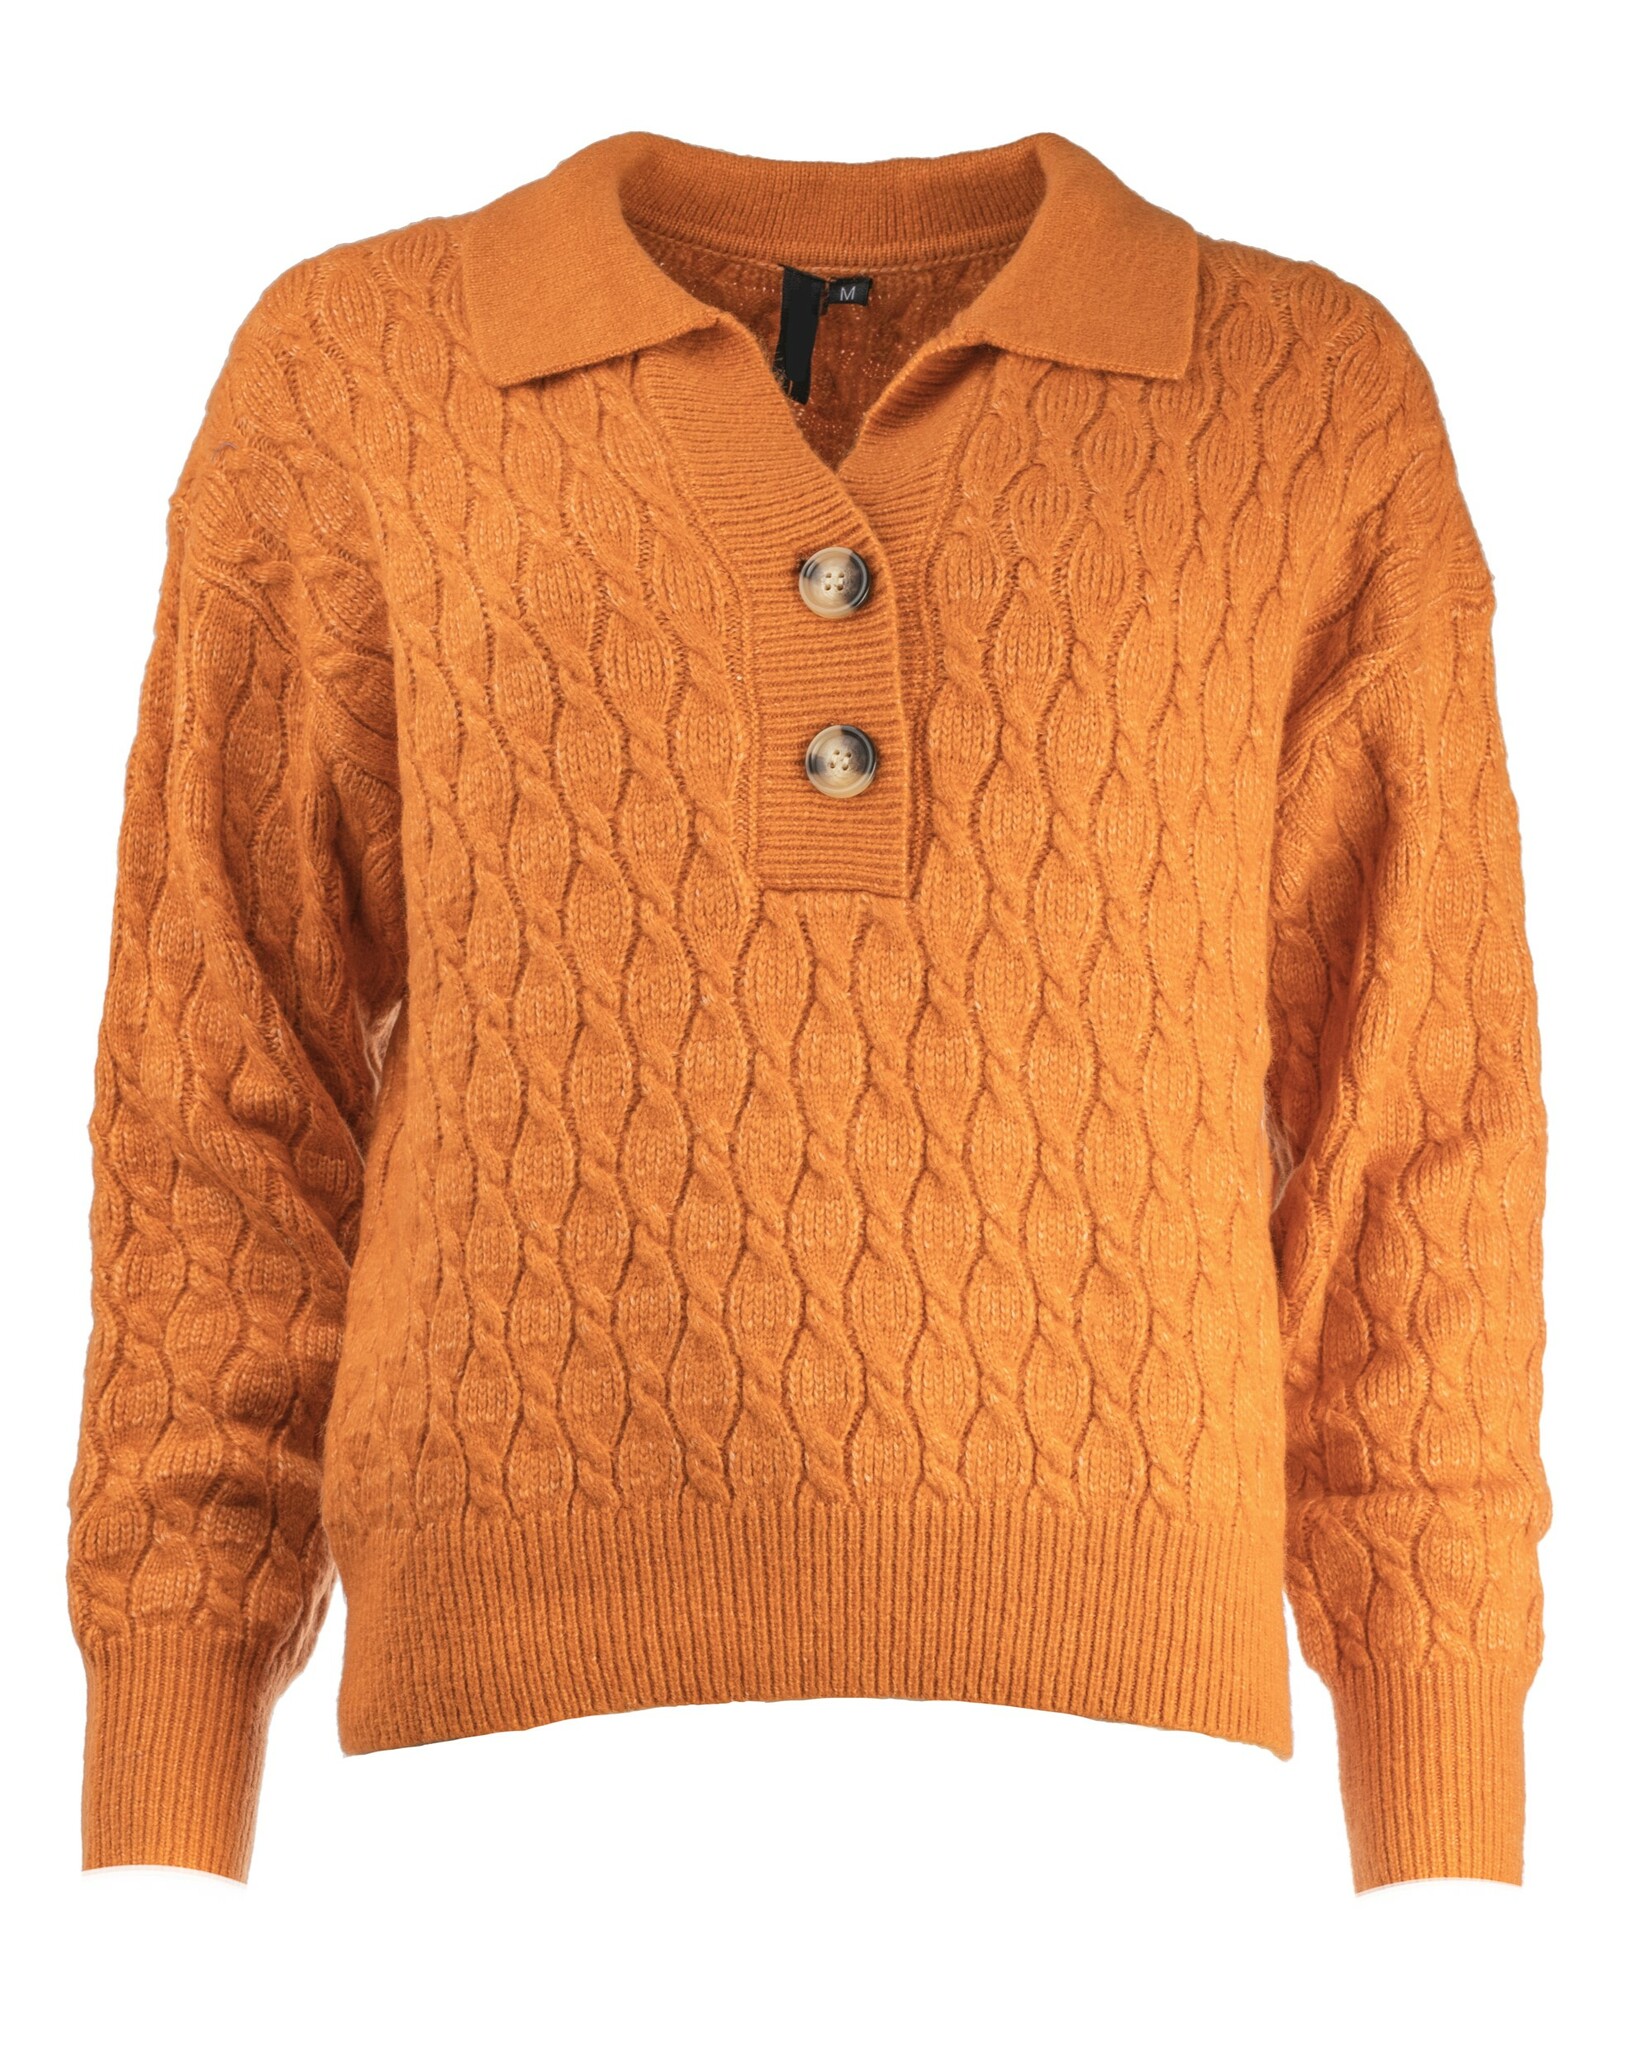 Fin orange stickad tröja med knappar och krage I Orange stickad tröja I Stickad tröja orange I Höstmode stickat dam